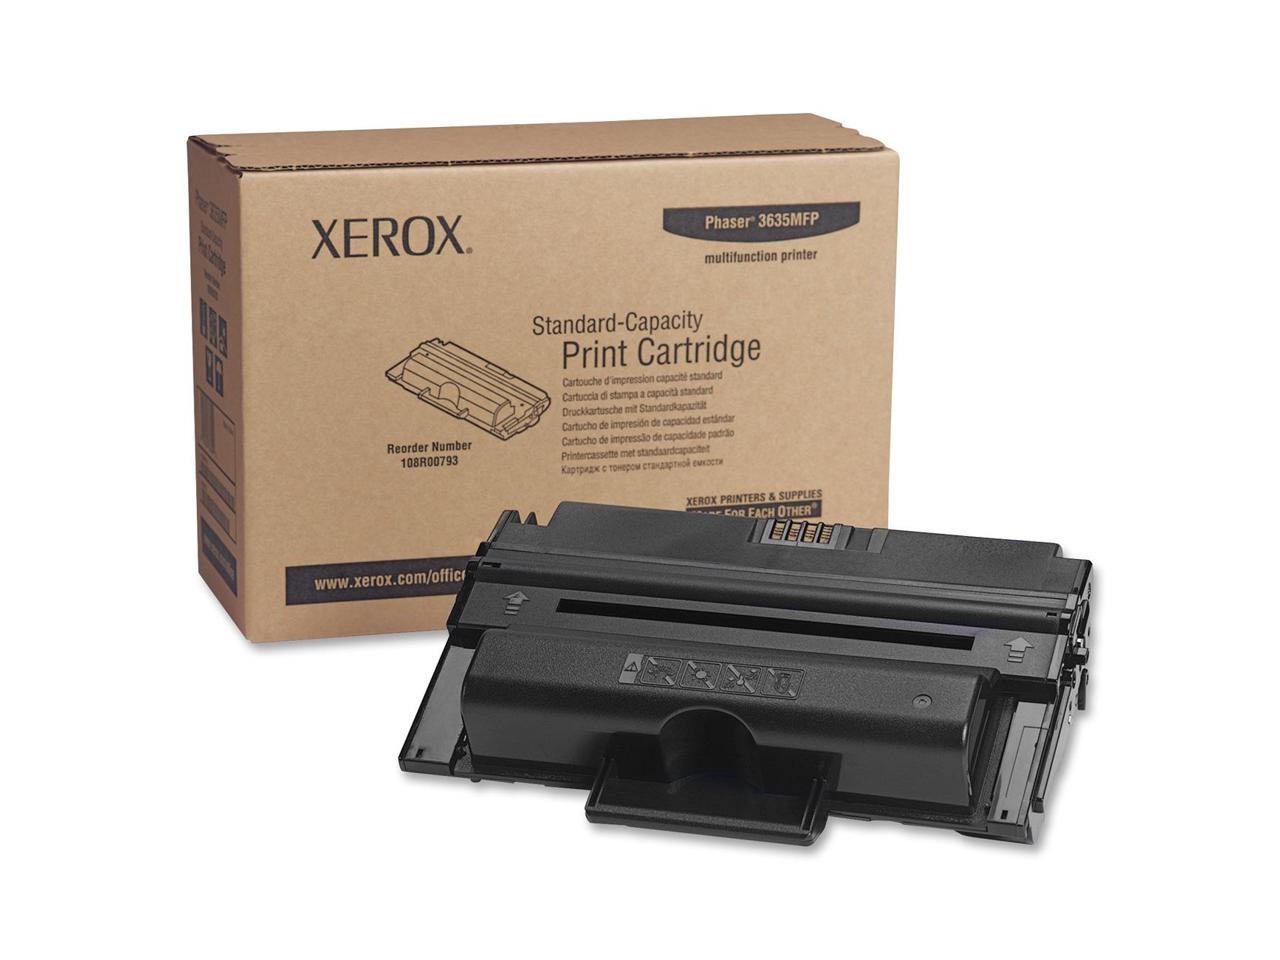 Xerox 108R00793 Print Cartridge - Black